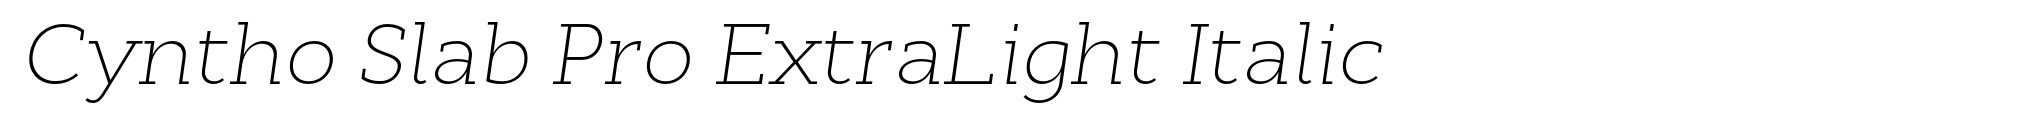 Cyntho Slab Pro ExtraLight Italic image